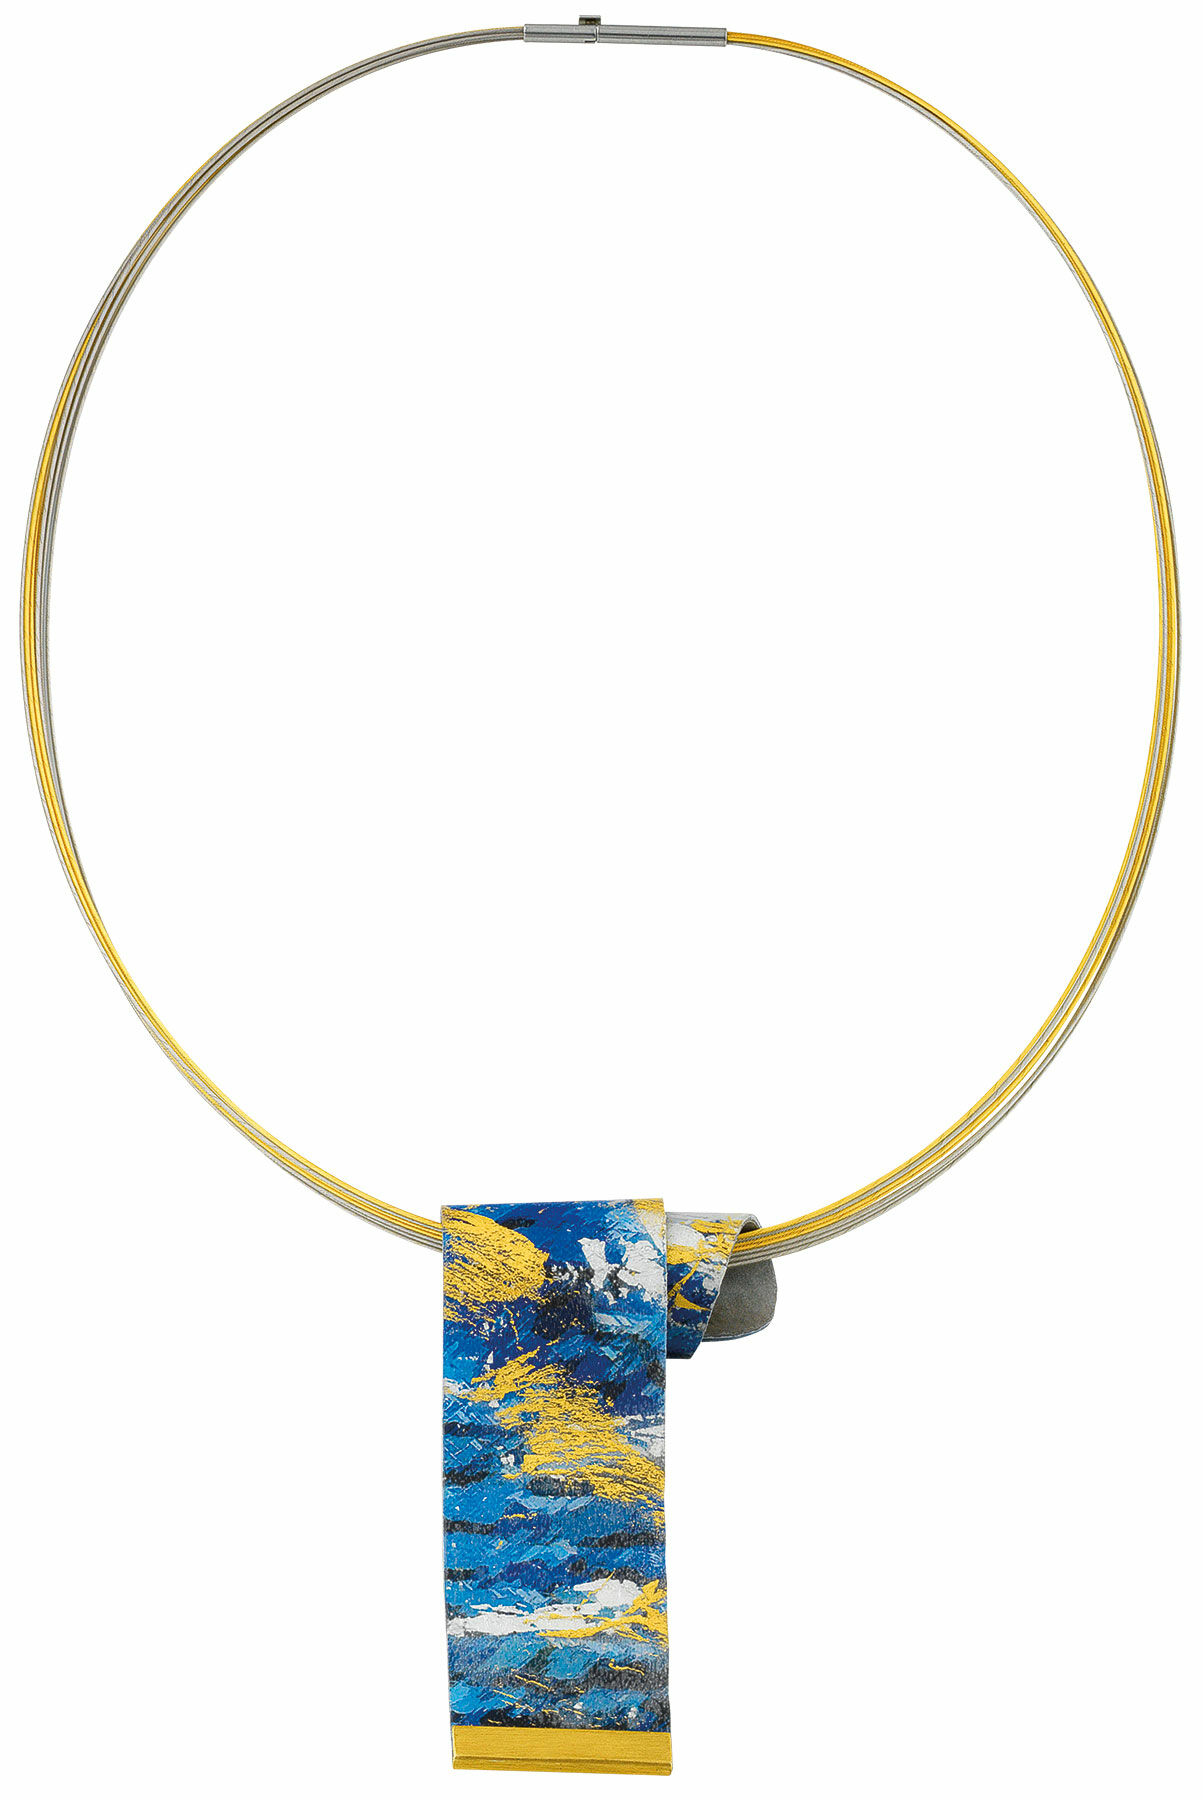 Necklace "Blue Horizon" by Kreuchauff-Design